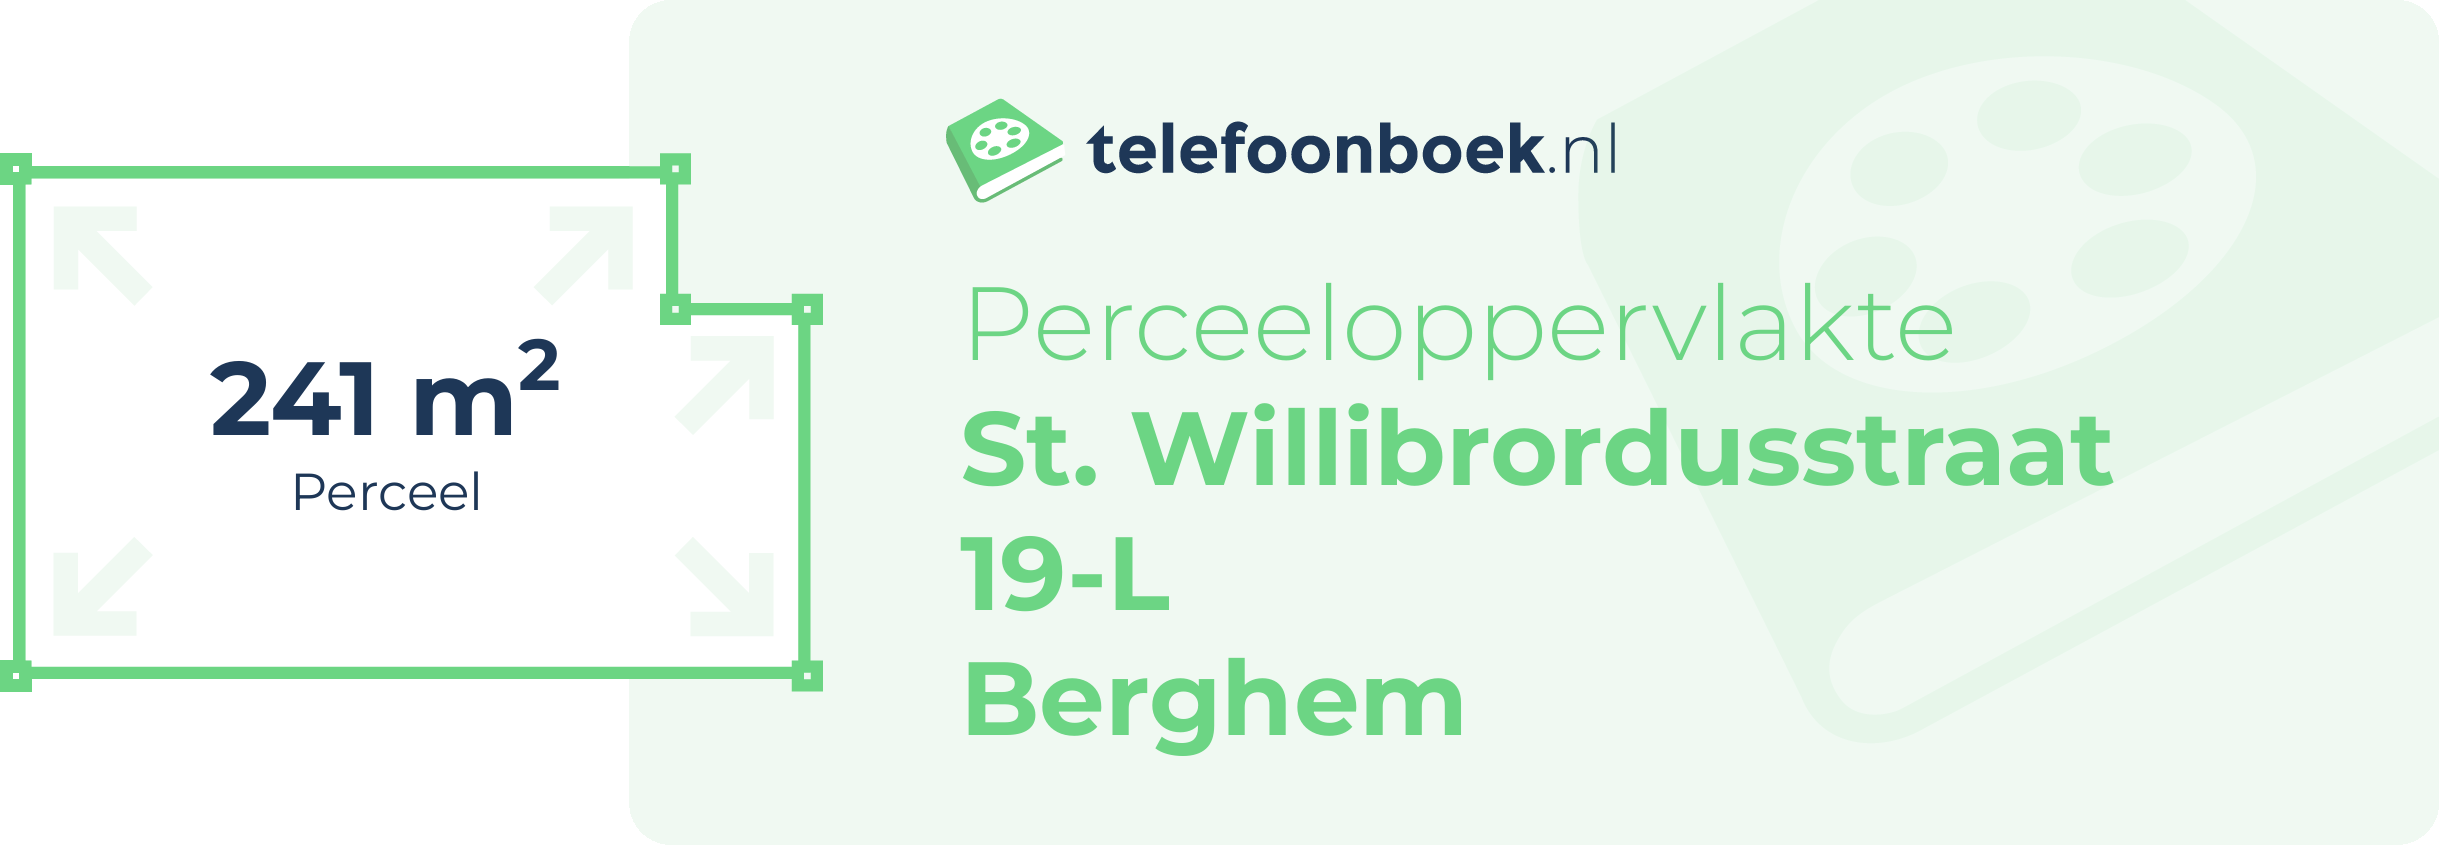 Perceeloppervlakte St. Willibrordusstraat 19-L Berghem